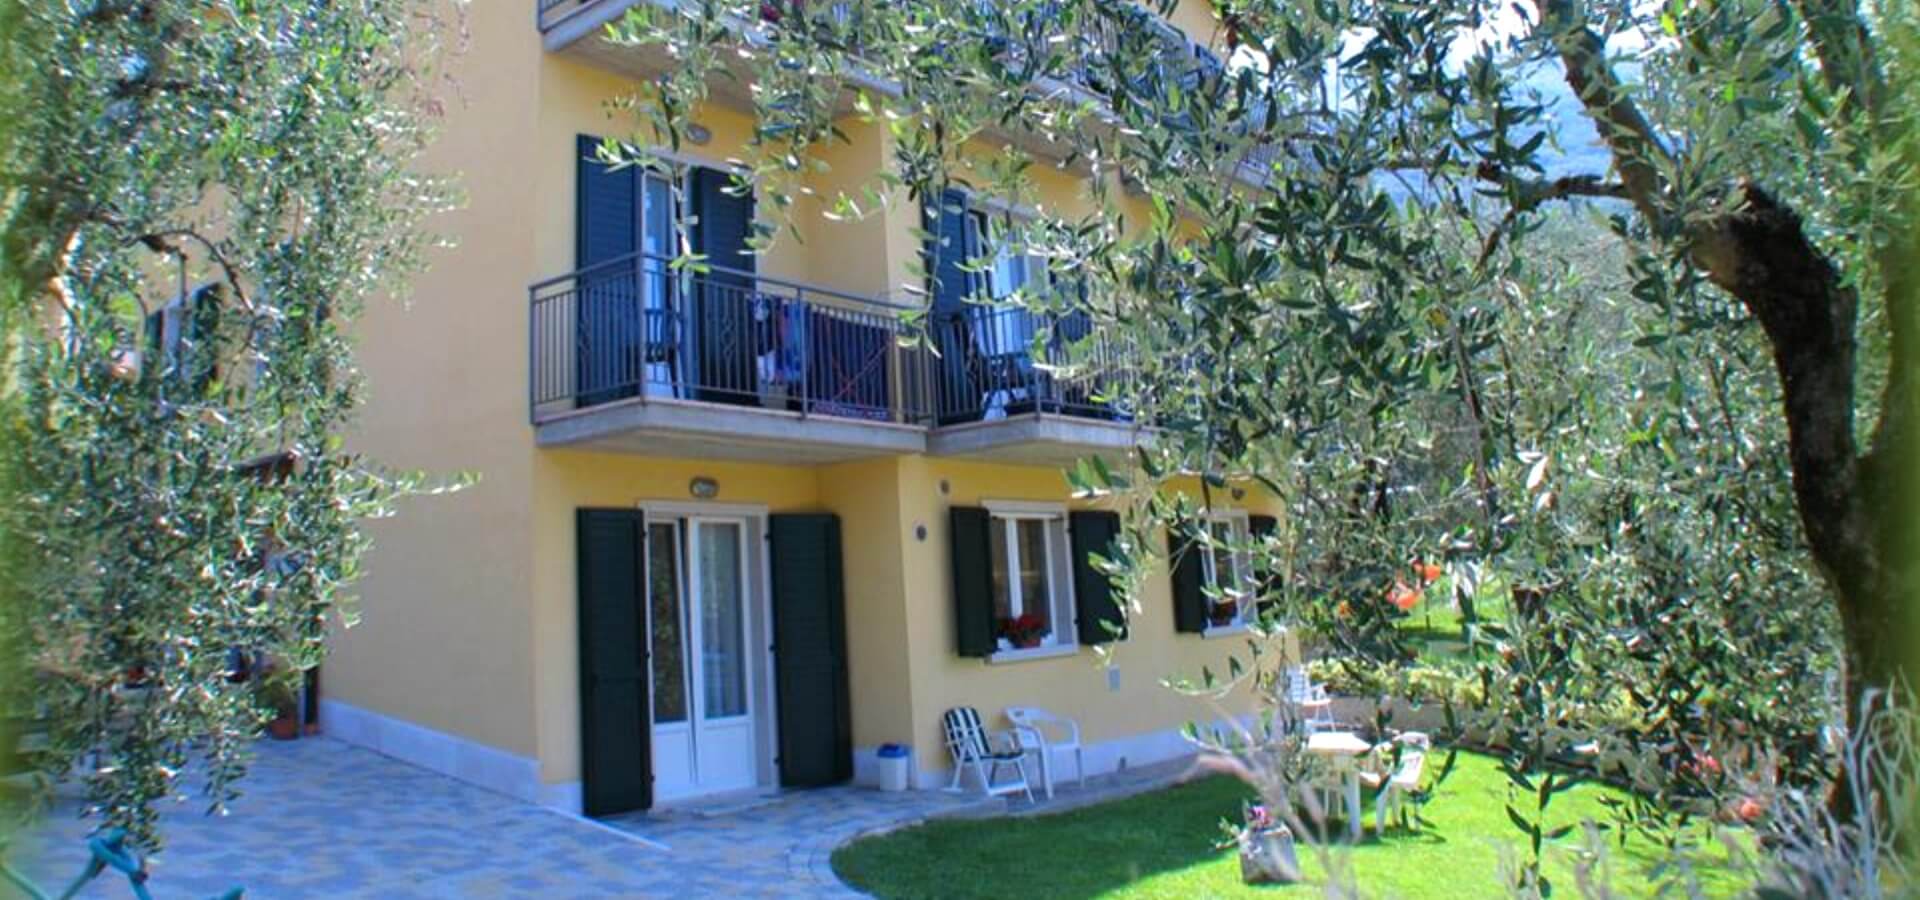 Fotos der Apartments Andreis in Malcesine mit Balkon und Blick auf den See, den Garten und den Pool